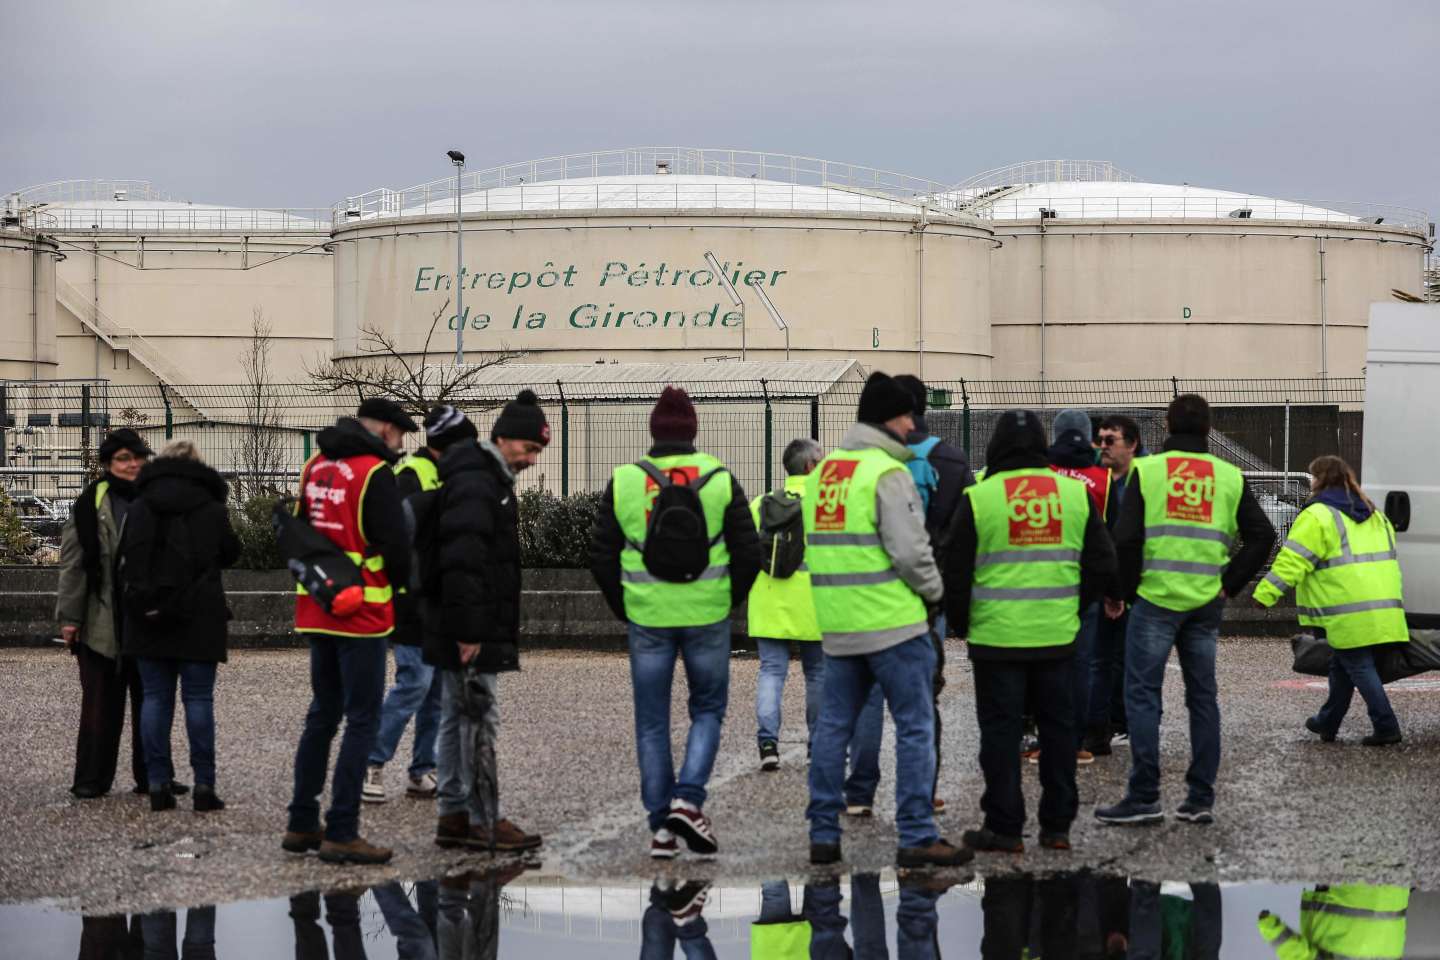 Les expéditions de carburant toujours bloquées dans les raffineries en France en raison de la grève